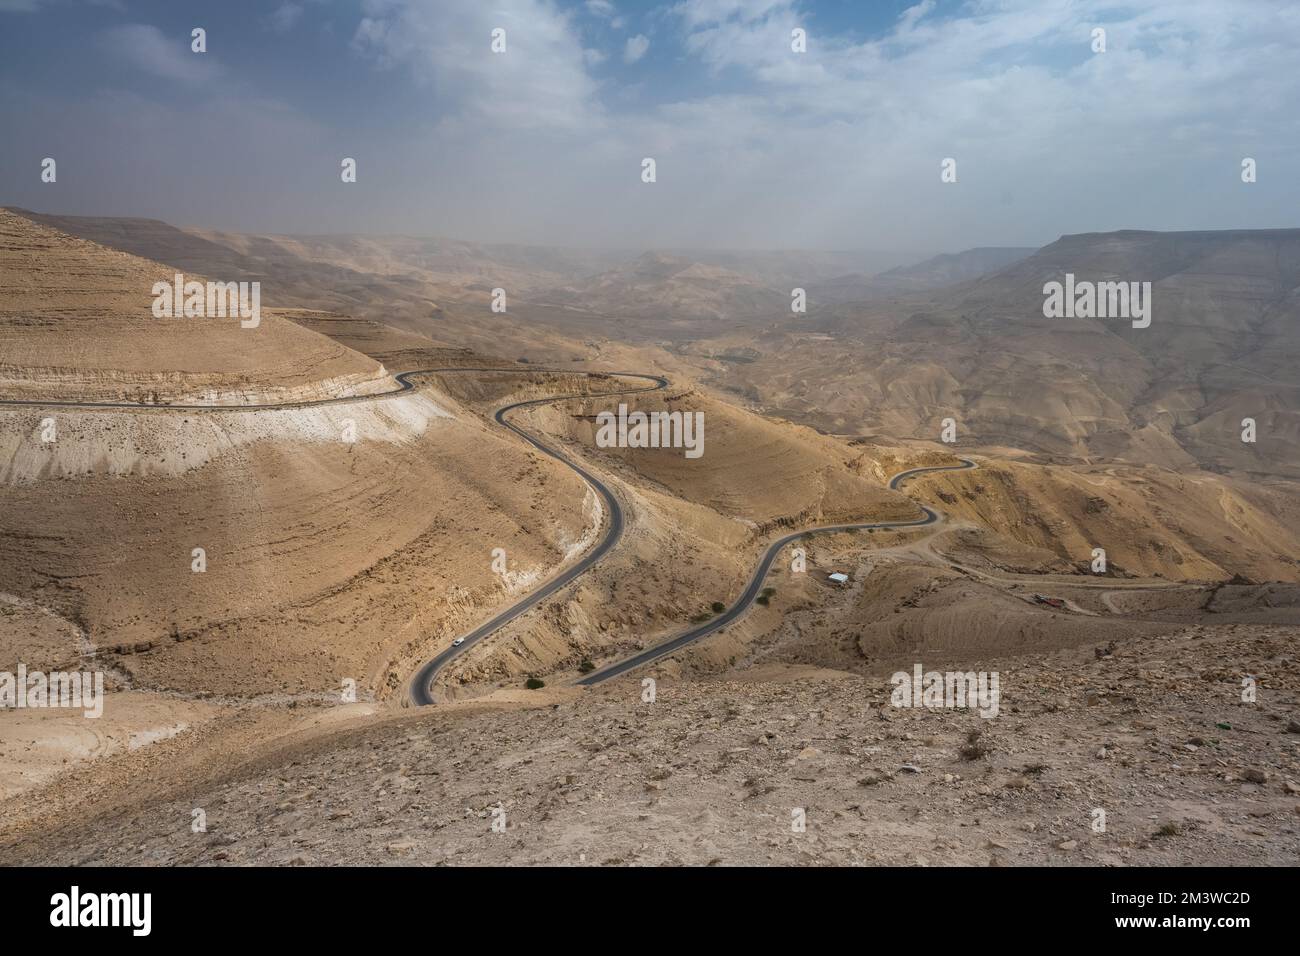 King's Highway 35 Wadi Mujib Valley, Berg- und Hügellandschaft in Jordanien mit wolkigem Himmel Stockfoto